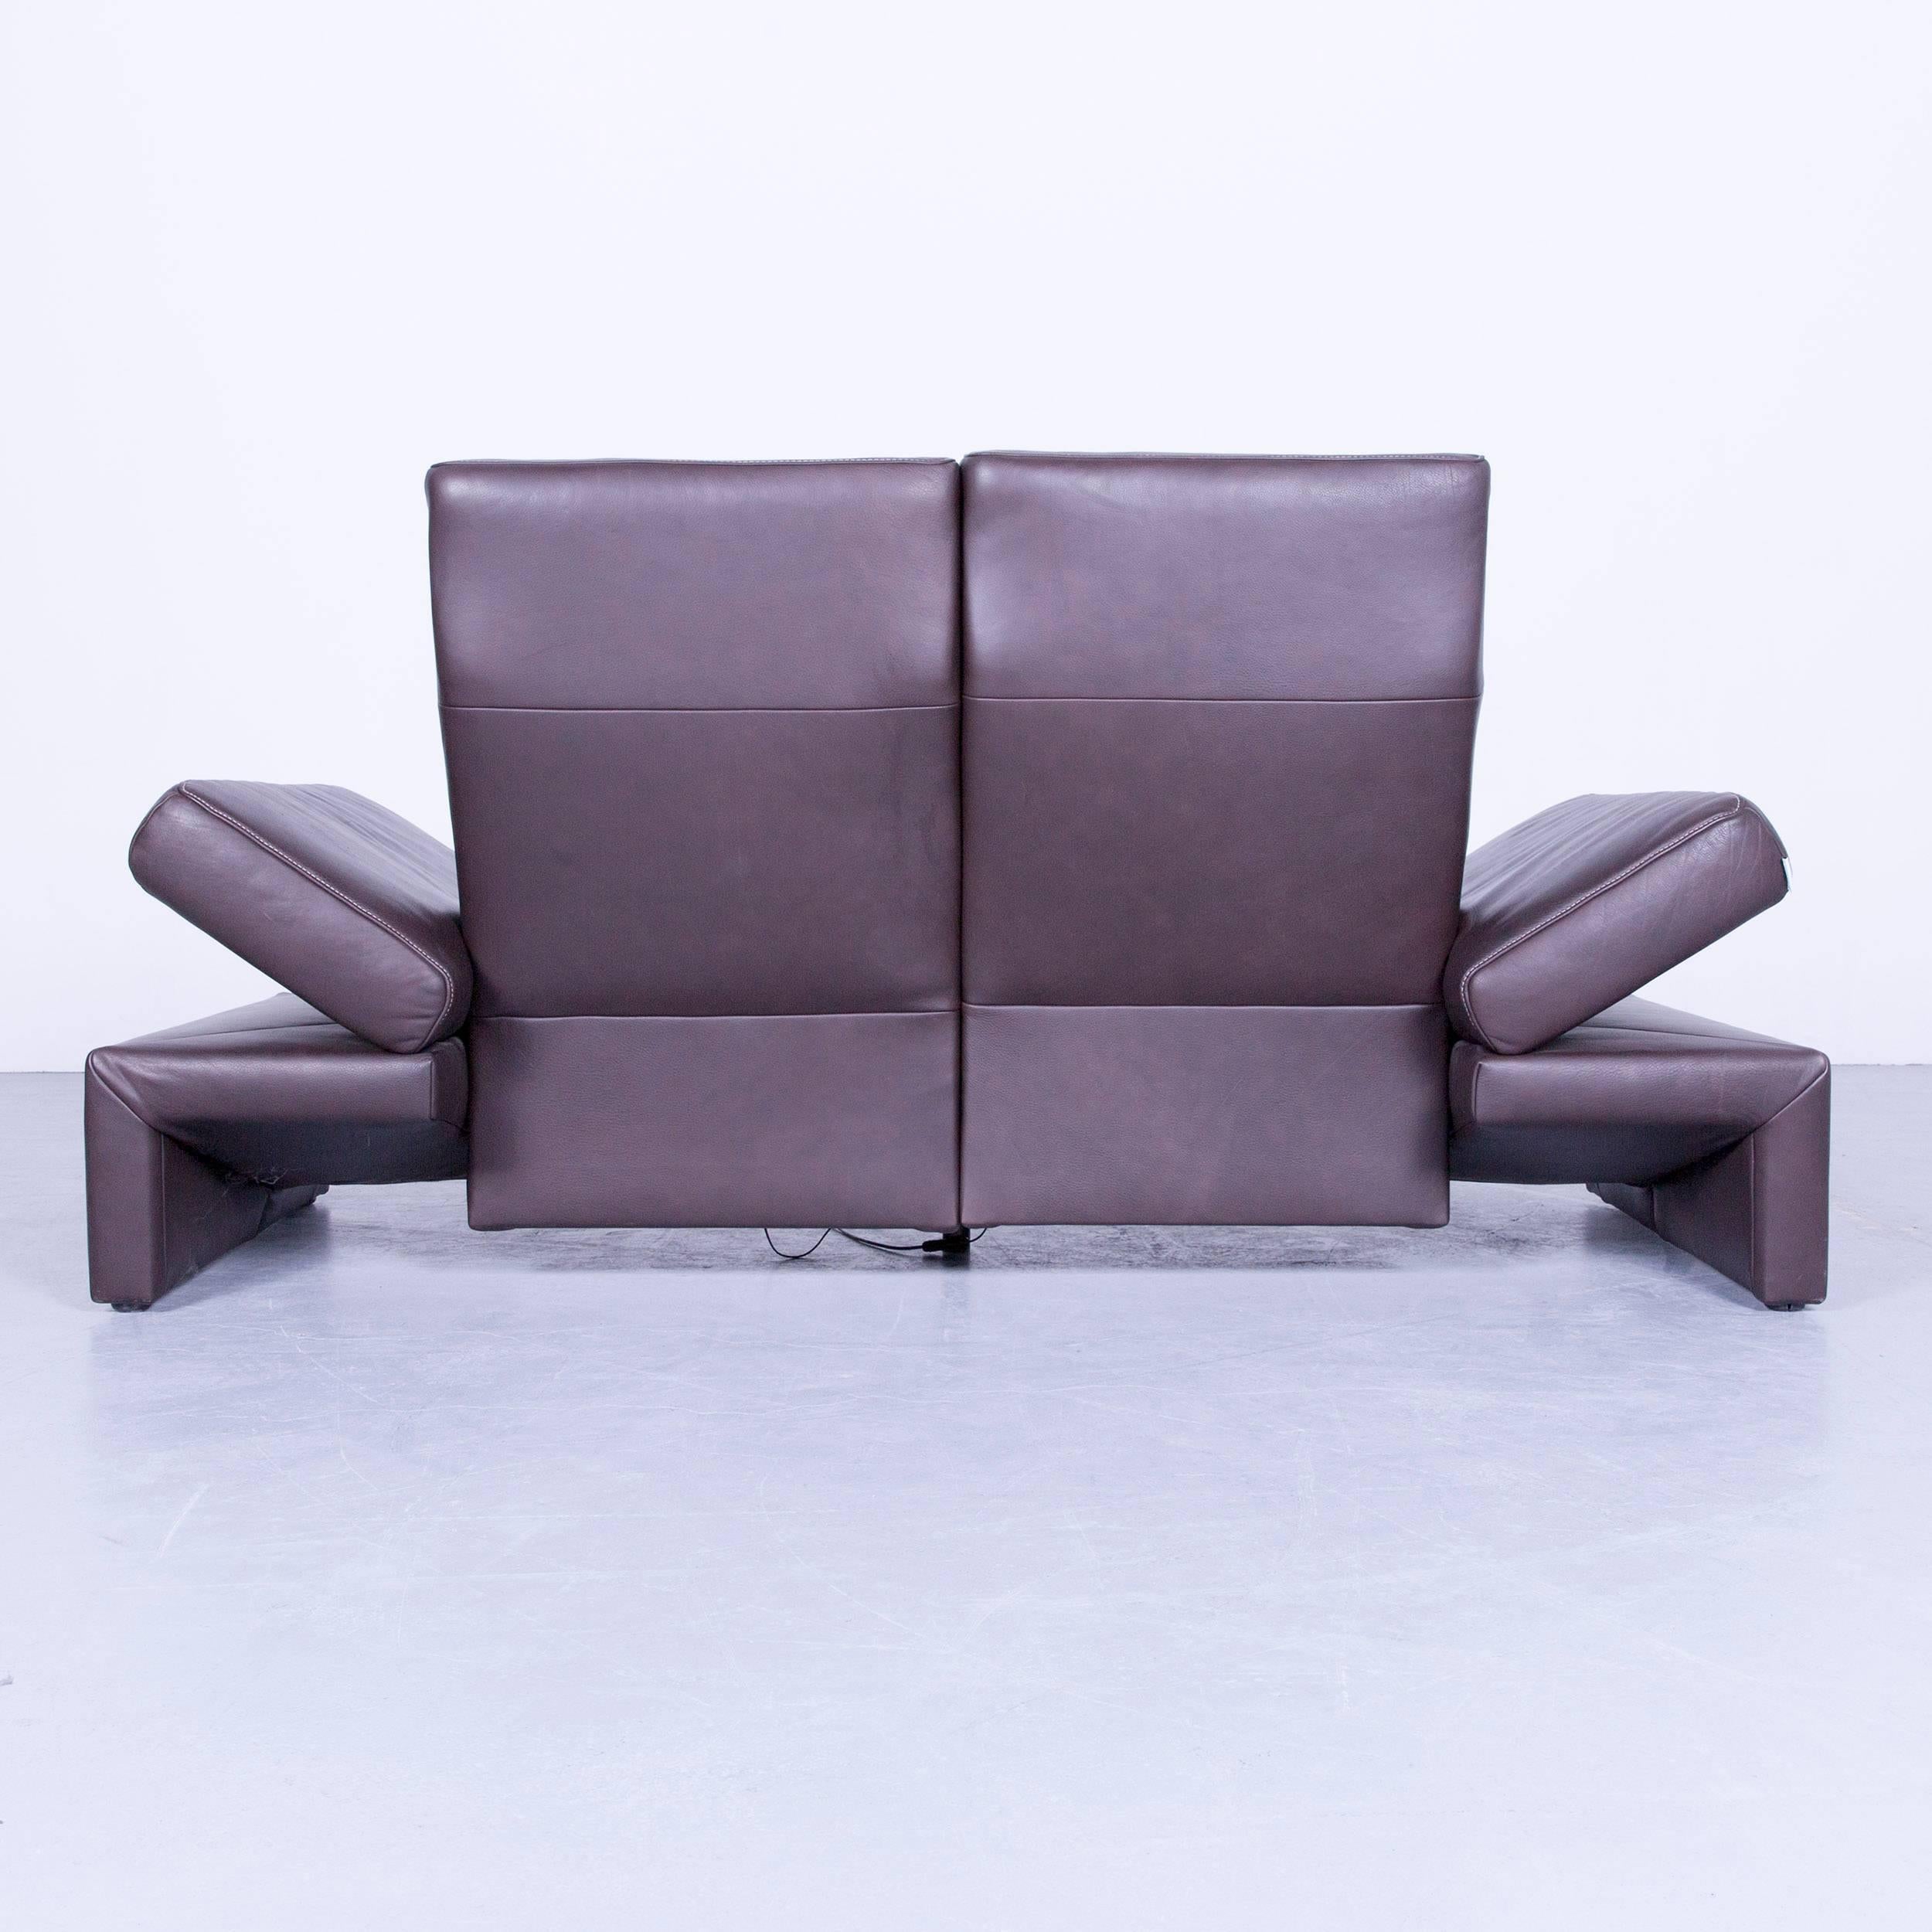 Original Mondo Designer Sofa Brown Three-Seat Couch Modern Recliner Function 1